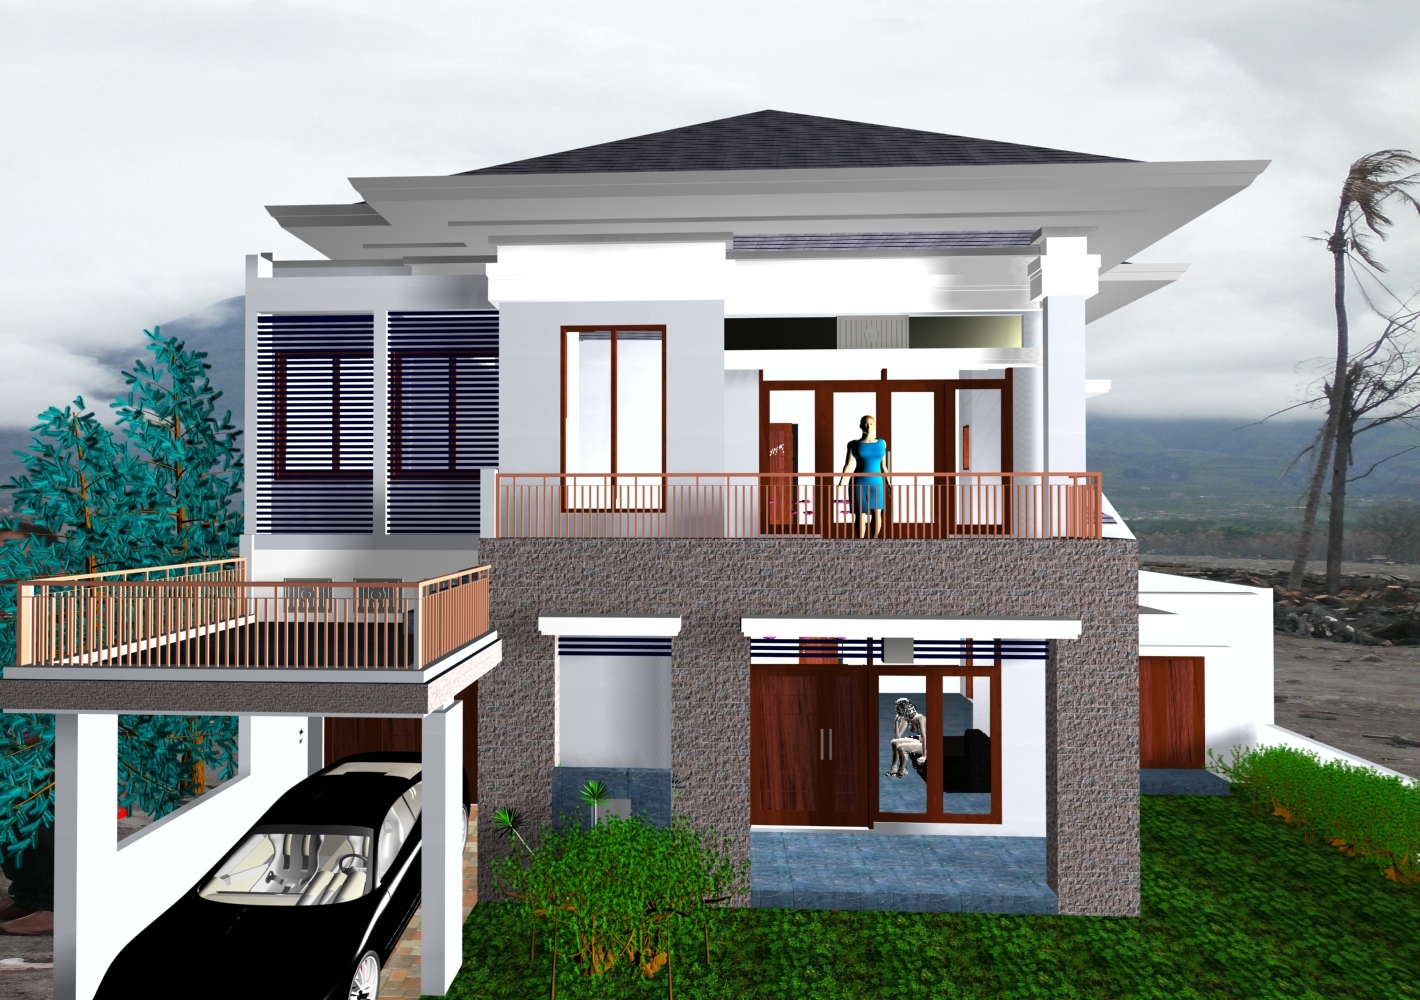  Desain  Rumah  Idaman  2019 Prathama Raghavan